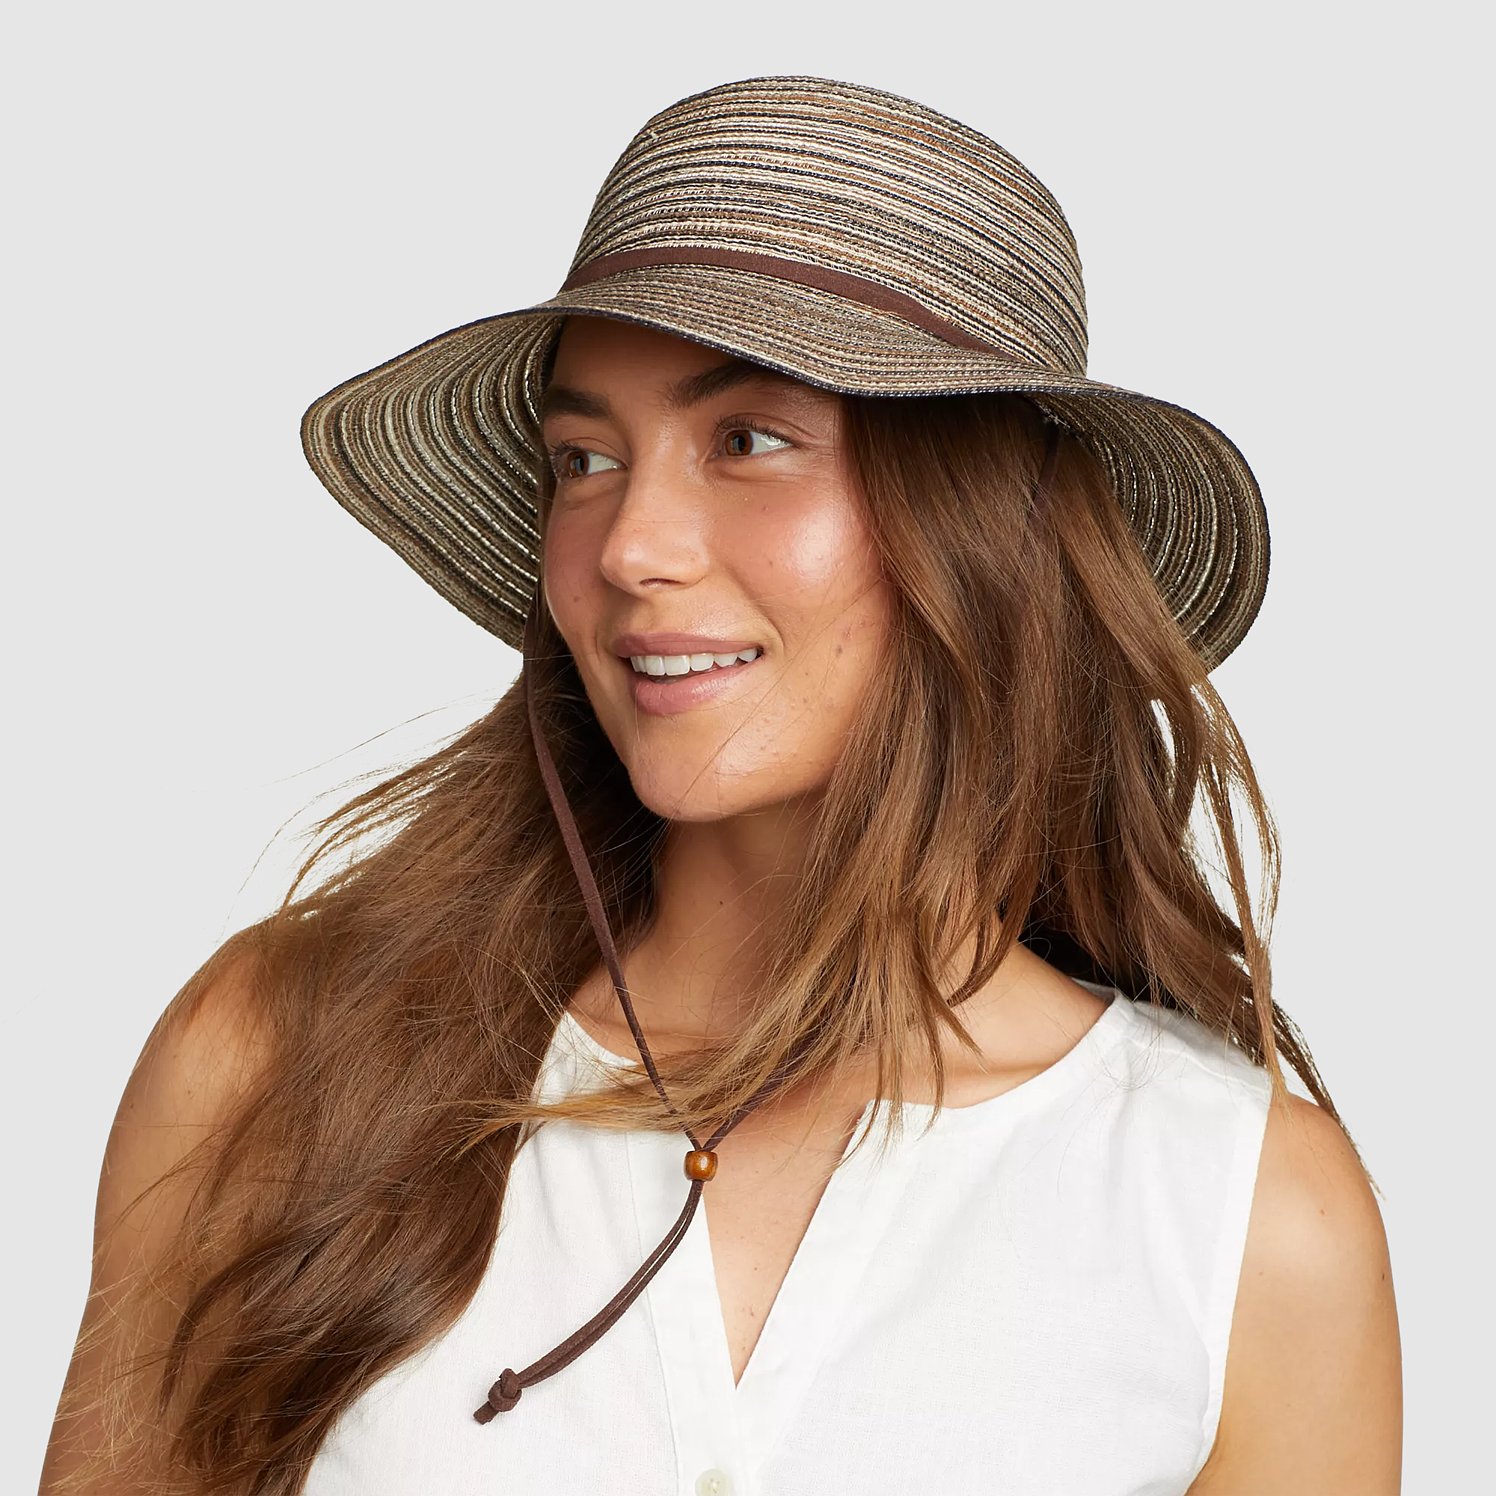 Eddie Bauer Women's Packable Straw Hat - Wide Brim